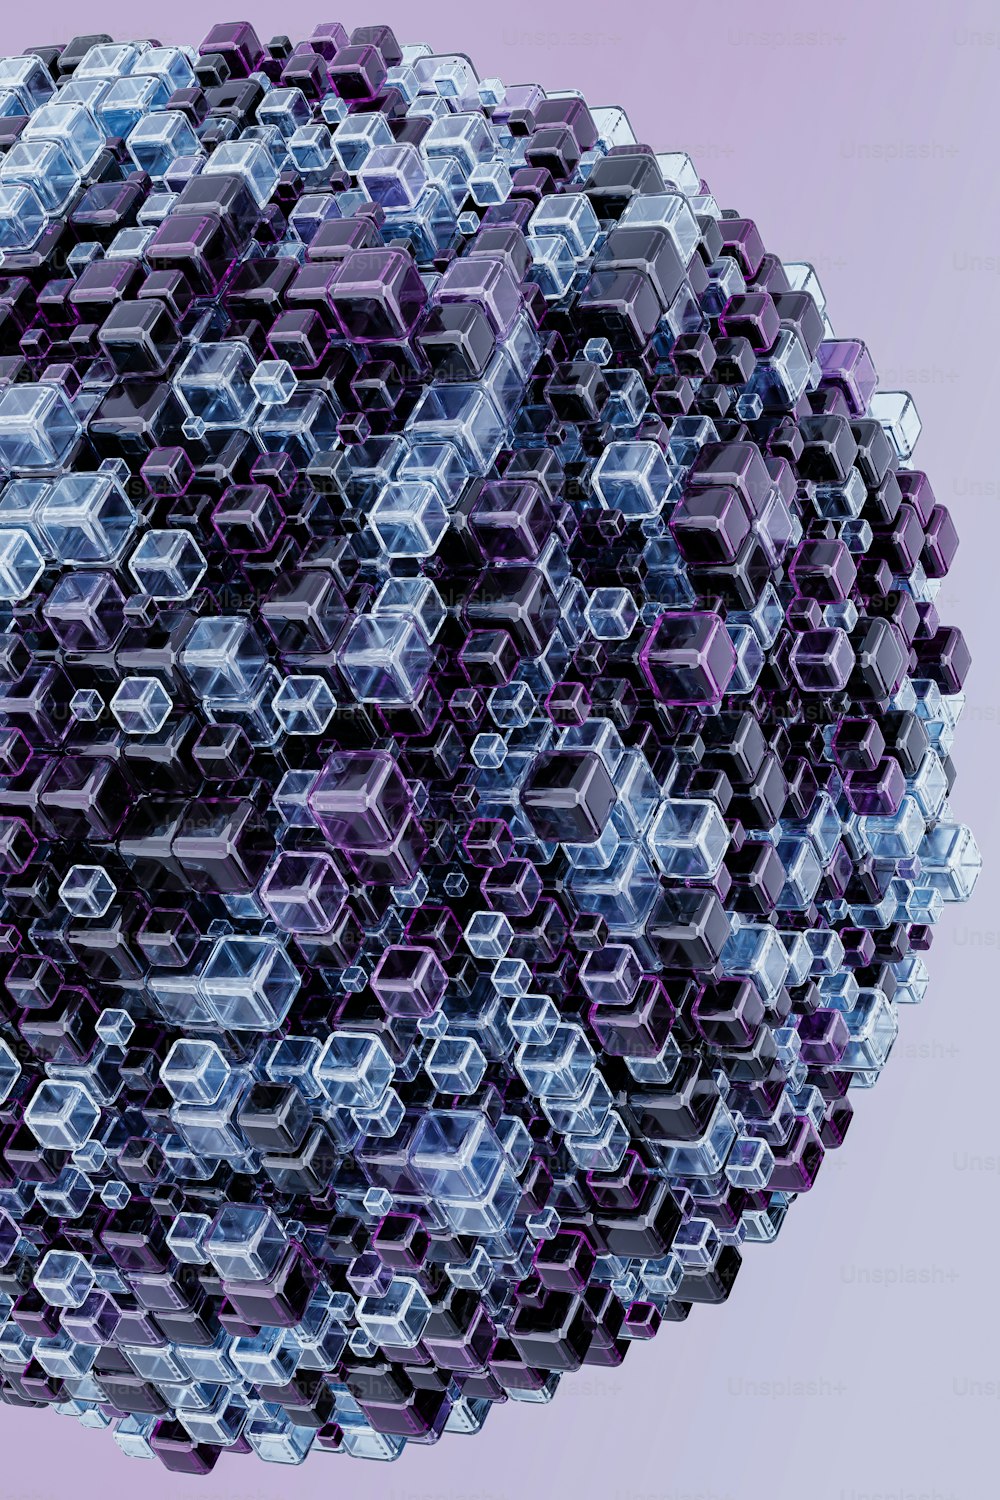 Une sphère faite de cubes hexagonaux sur fond violet